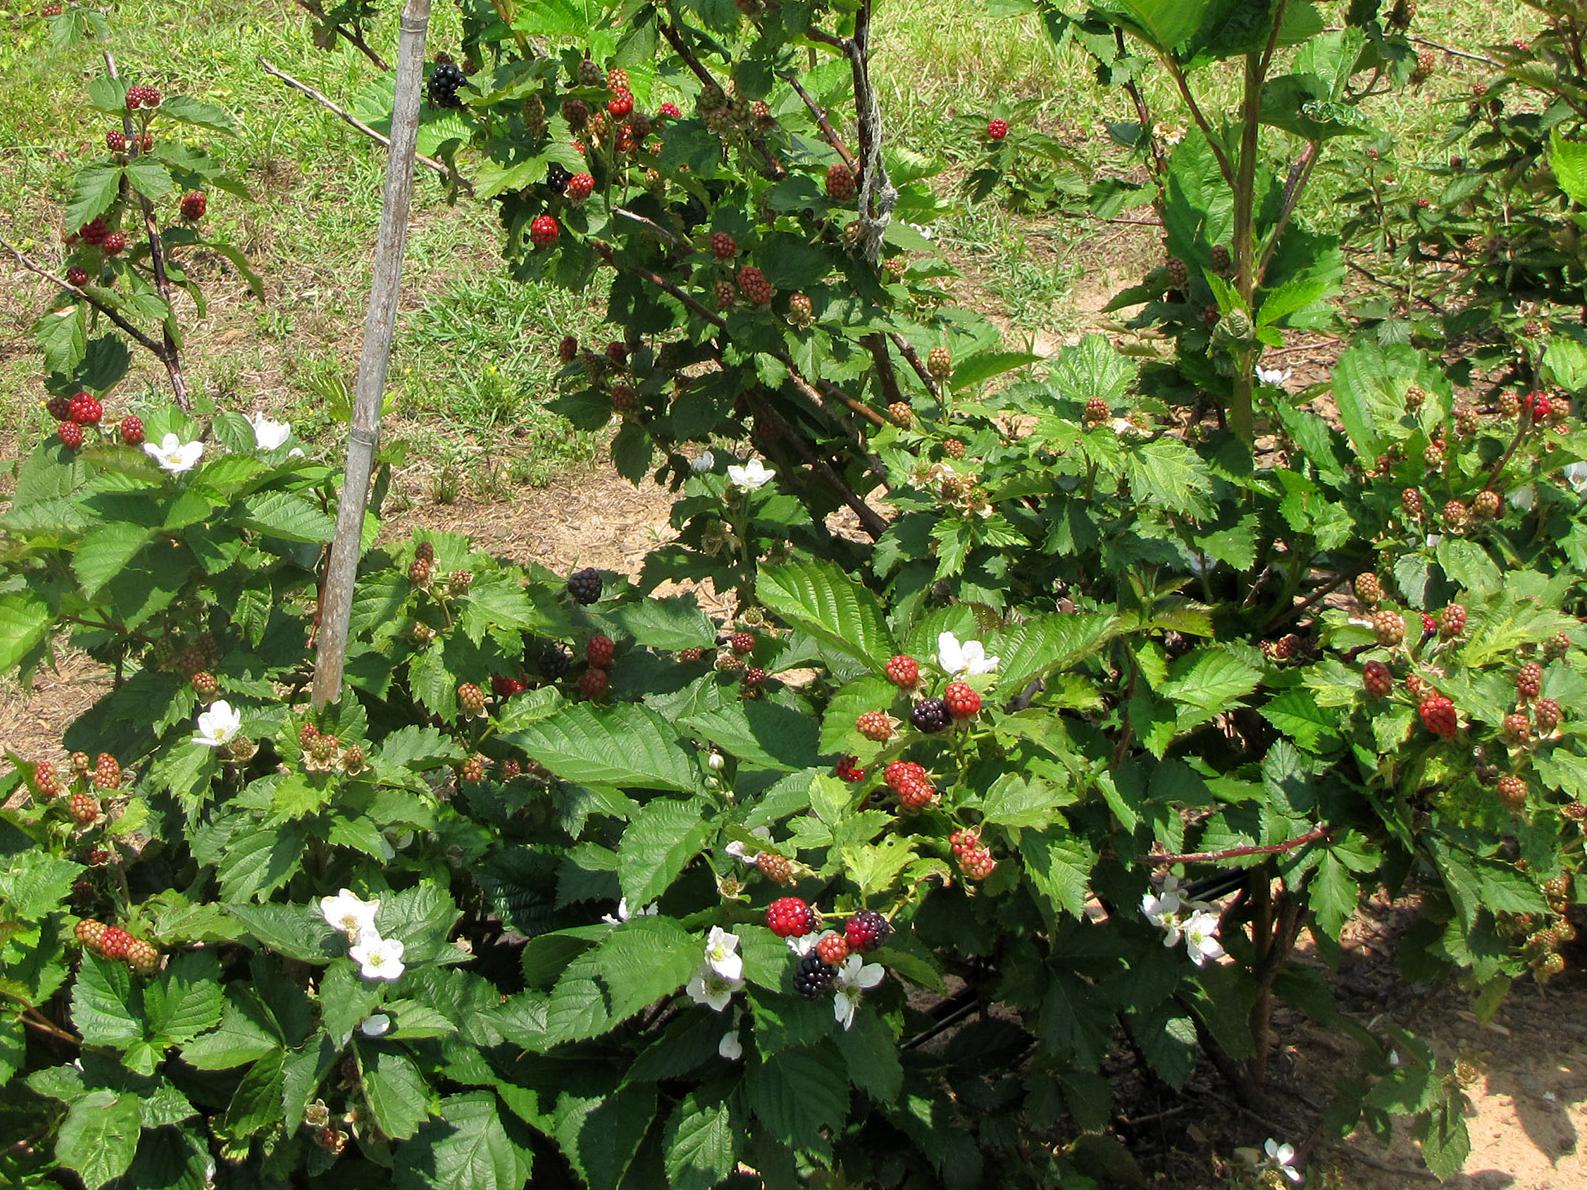 Blackberries growing.